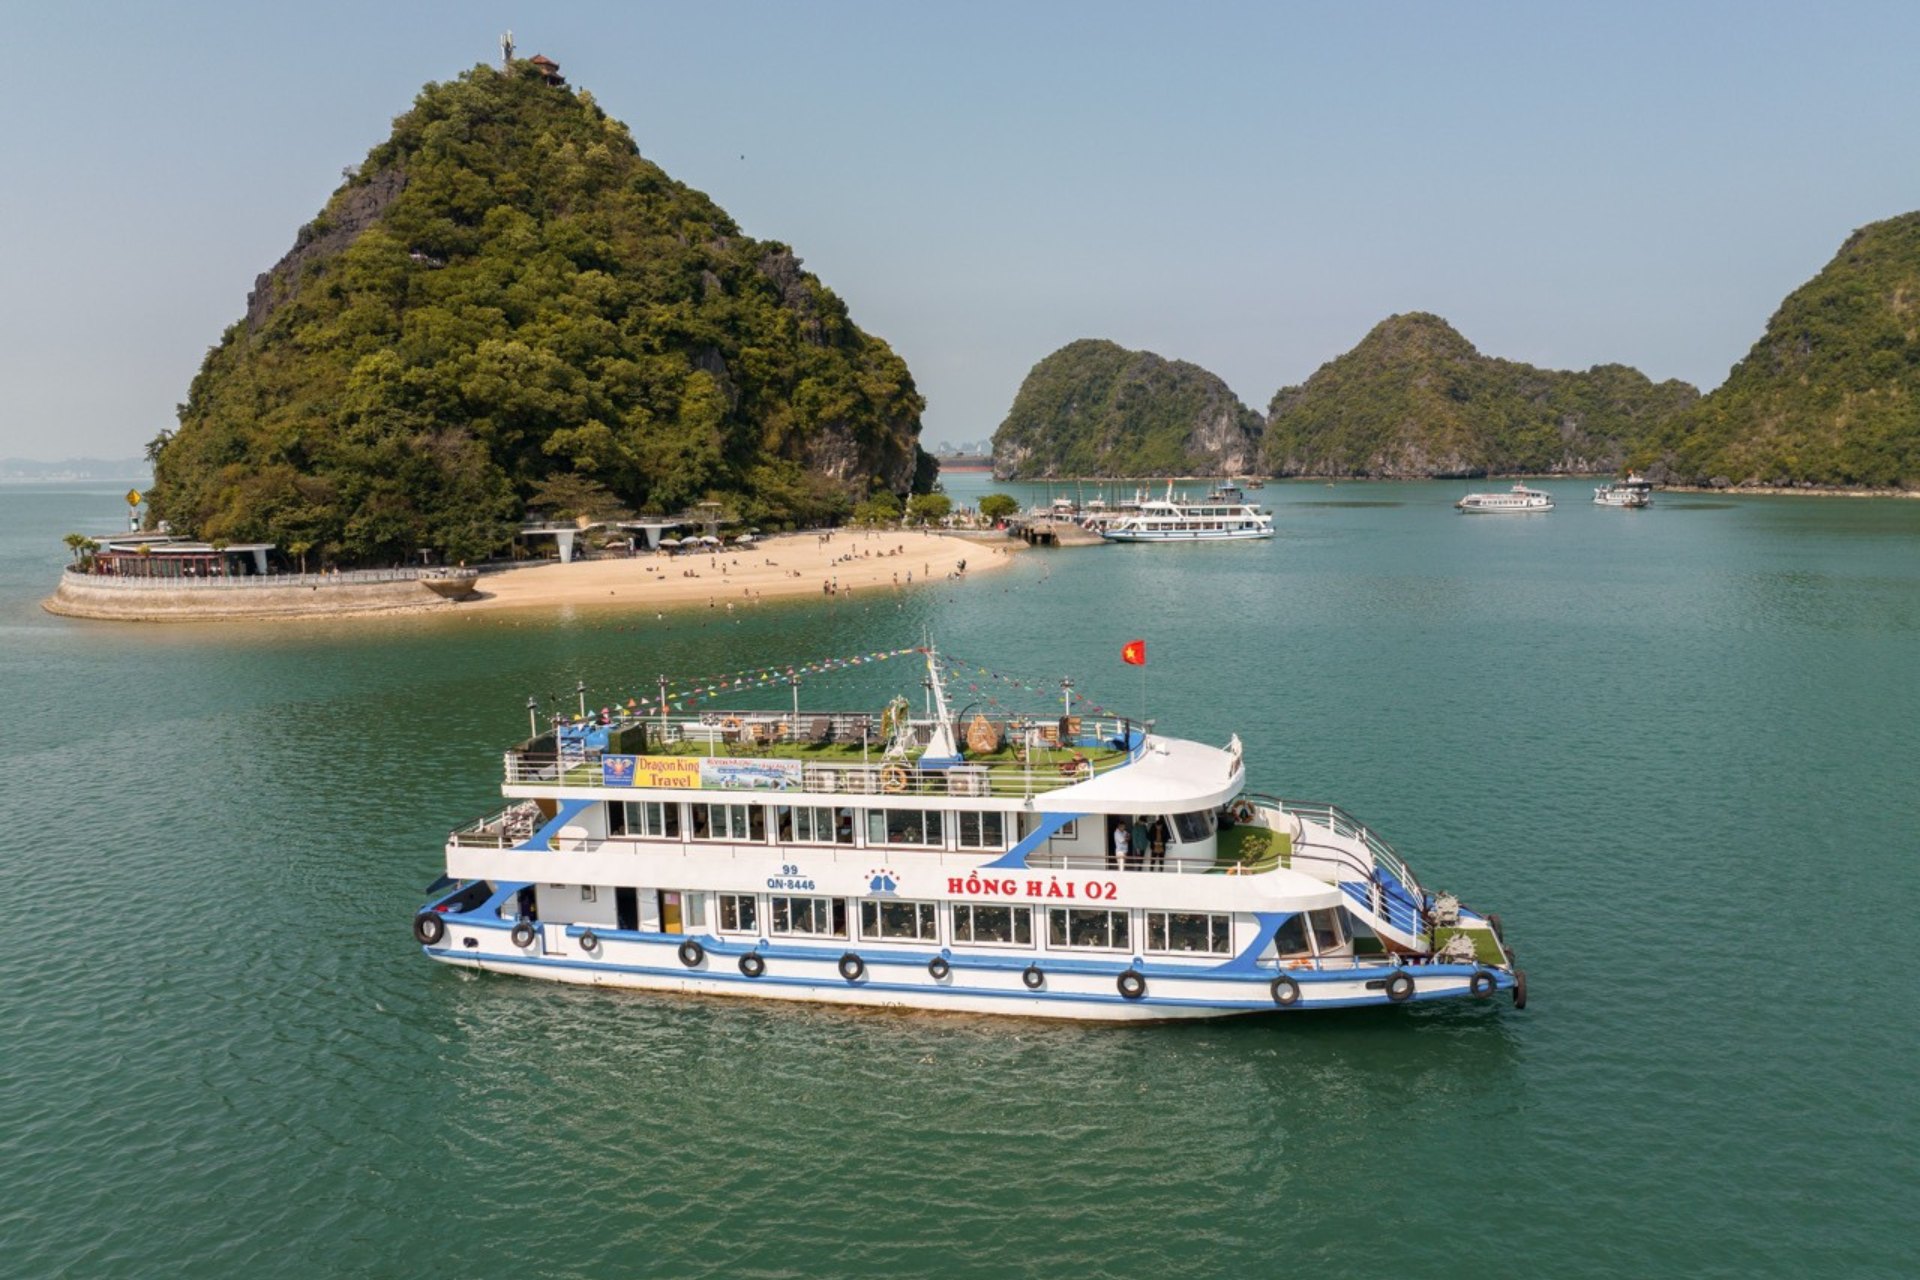 Hong Hai Cruise